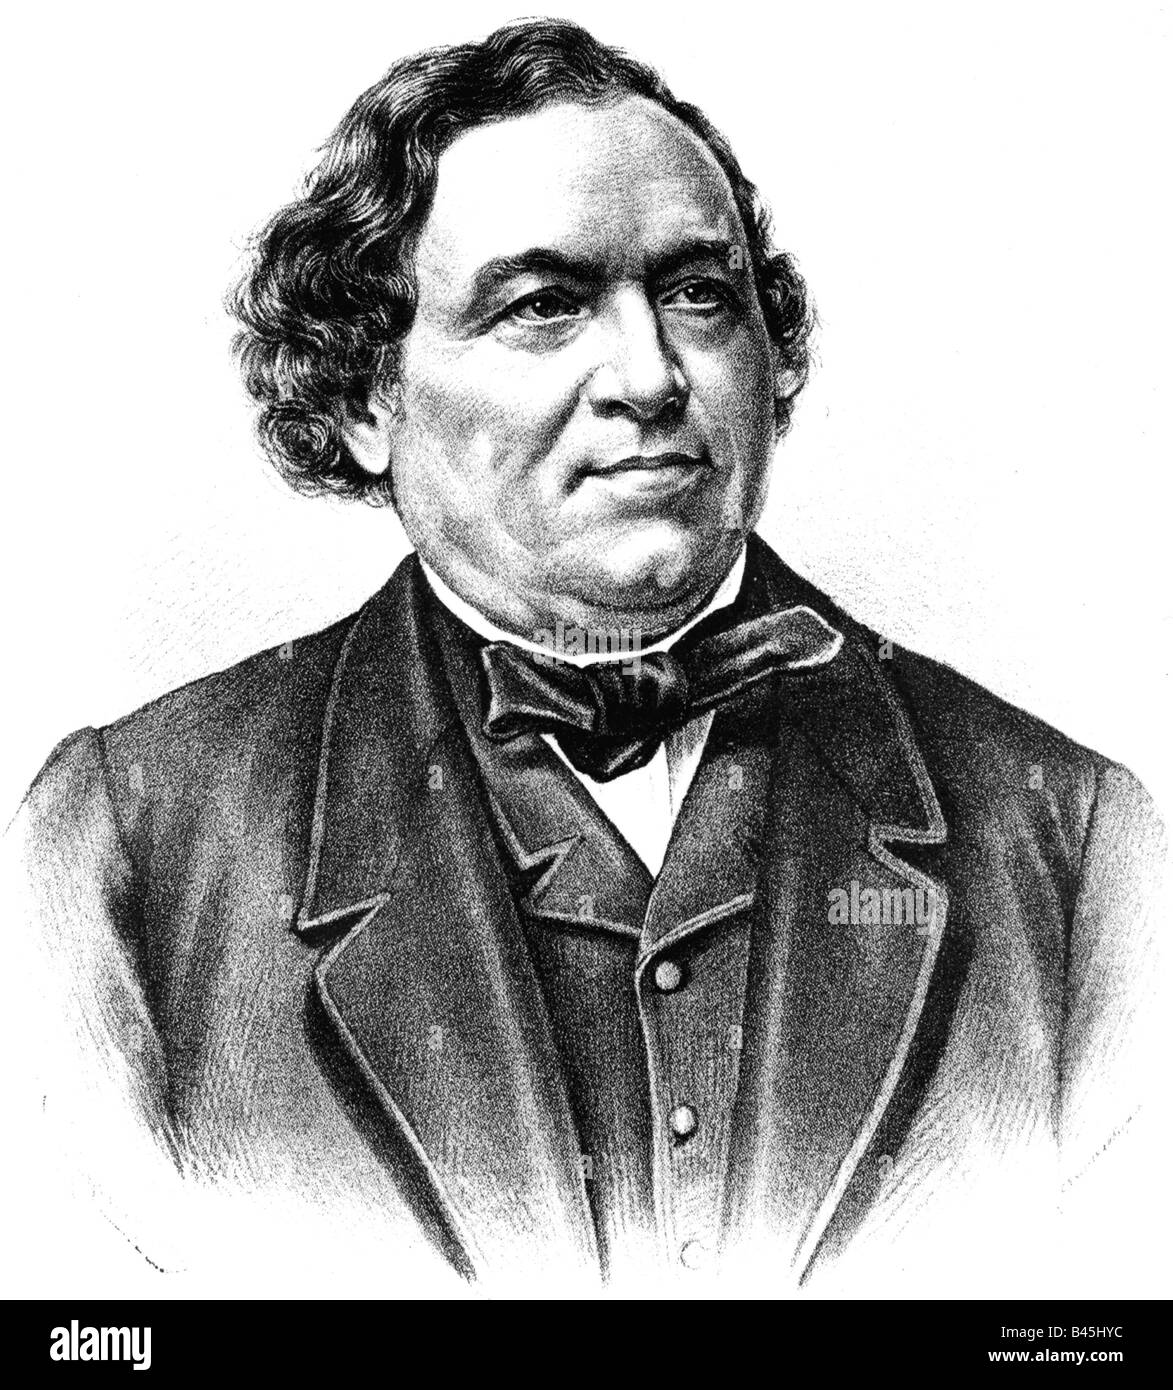 Dumas, Jean-Baptiste, 14.7.1800 - 10.4.1884, French scientist (chemist), portrait, lithograph, 1892, Stock Photo